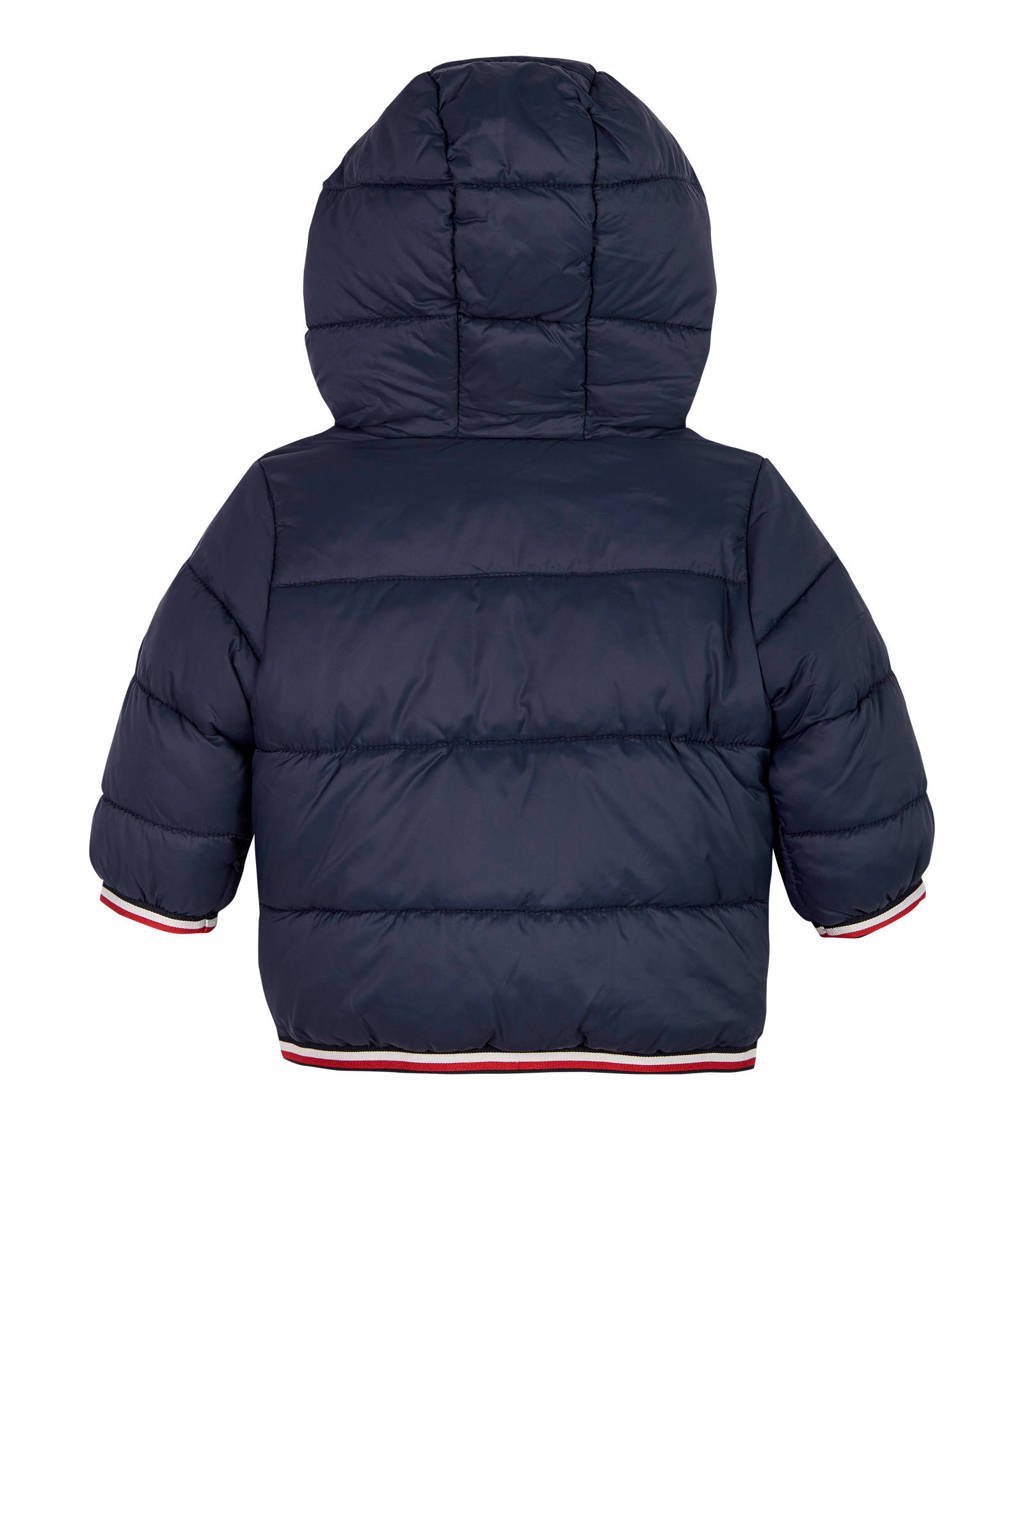 lager binnenkomst Accumulatie Tommy Hilfiger baby gewatteerde winterjas donkerblauw/rood/wit | wehkamp